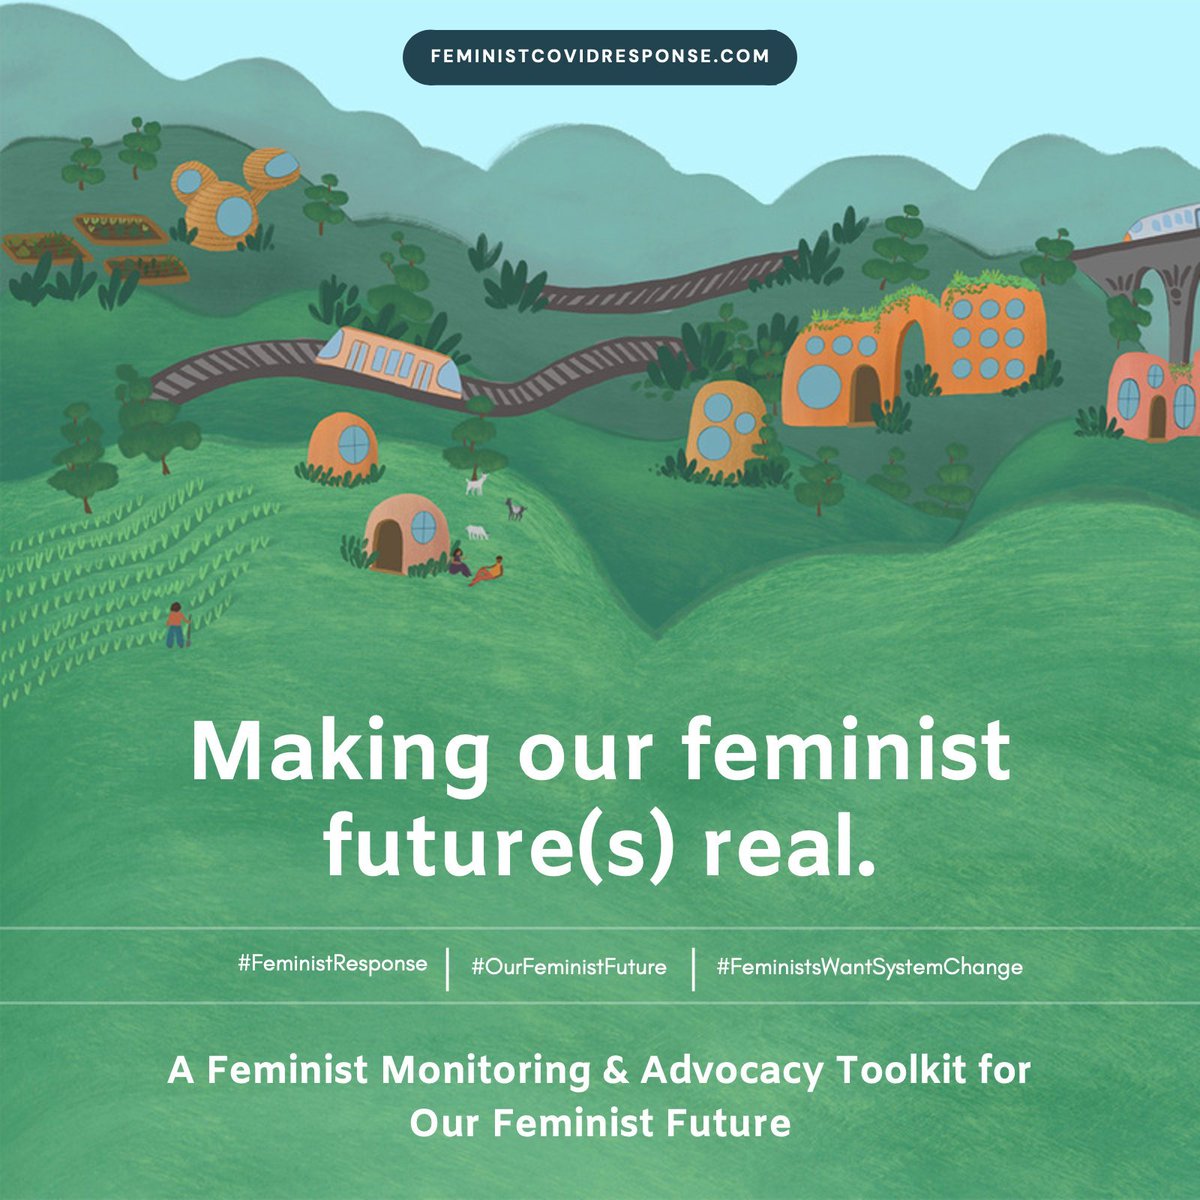 🌍 #AnotherWorldISPossible: 'A Feminist Monitoring & Advocacy Toolkit for #OurFeministFuture', amb la participació activa del @Women_Rio20.

Una #FeministResponse a la #COVIDー19 garanteix un futur més just per a totes. 🌱💜

#FeministsWantSystemChange

👉🏾 feministcovidresponse.com/toolkit